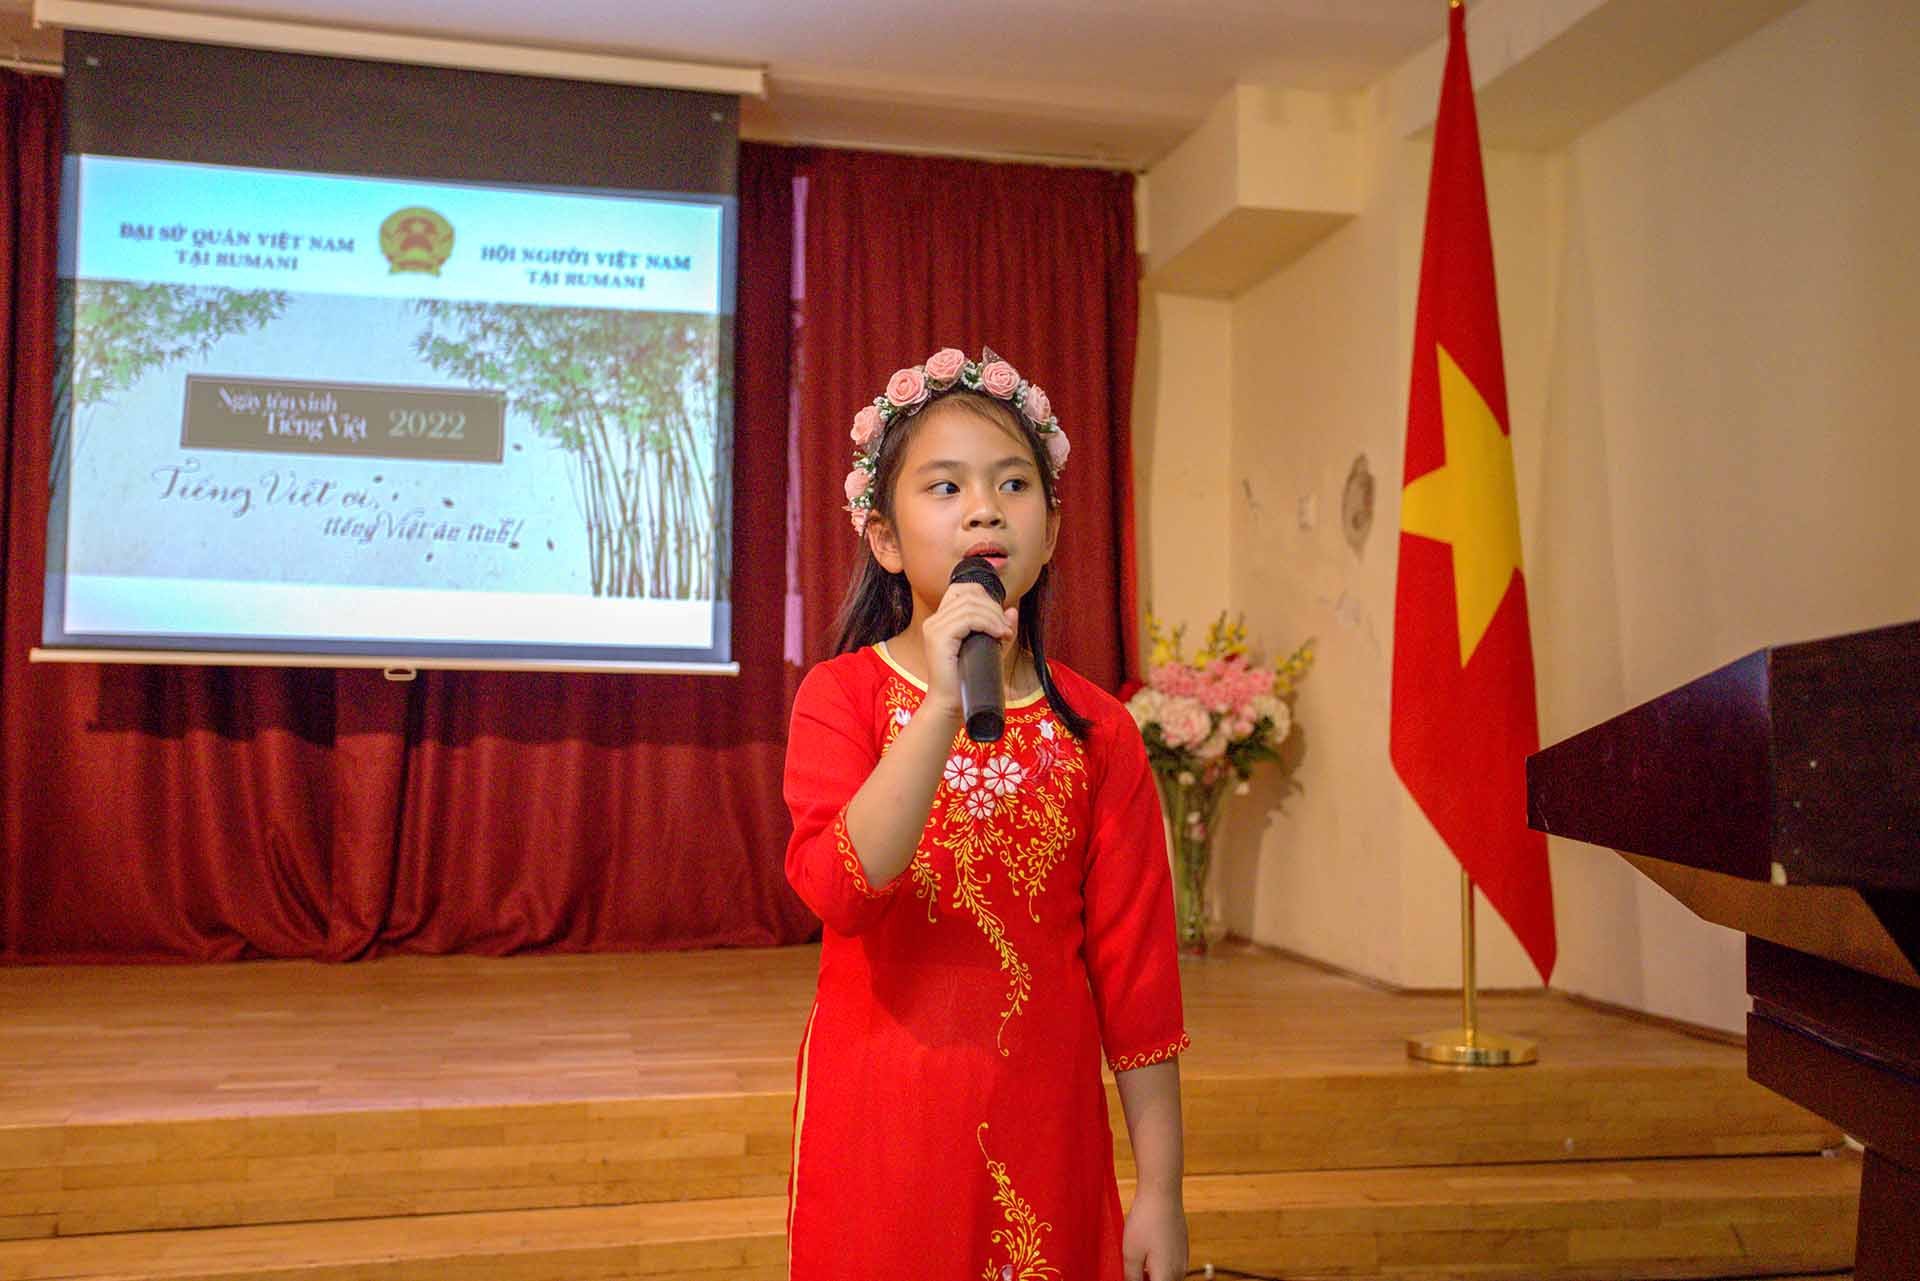 Kỷ niệm Ngày Tôn vinh tiếng Việt tại Romania